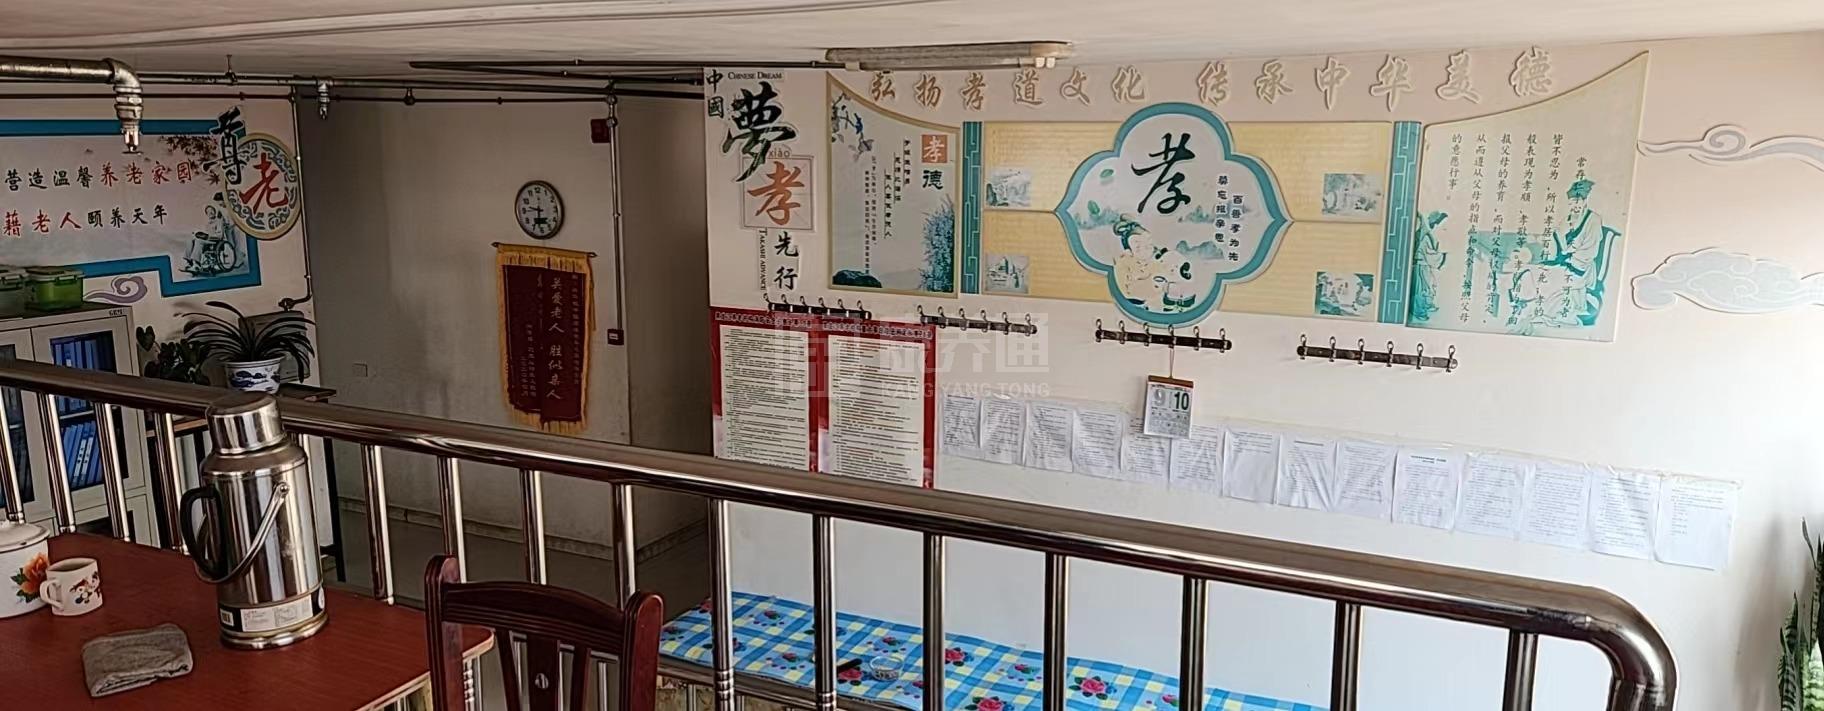 青冈县满满老年之家公寓环境图-餐台